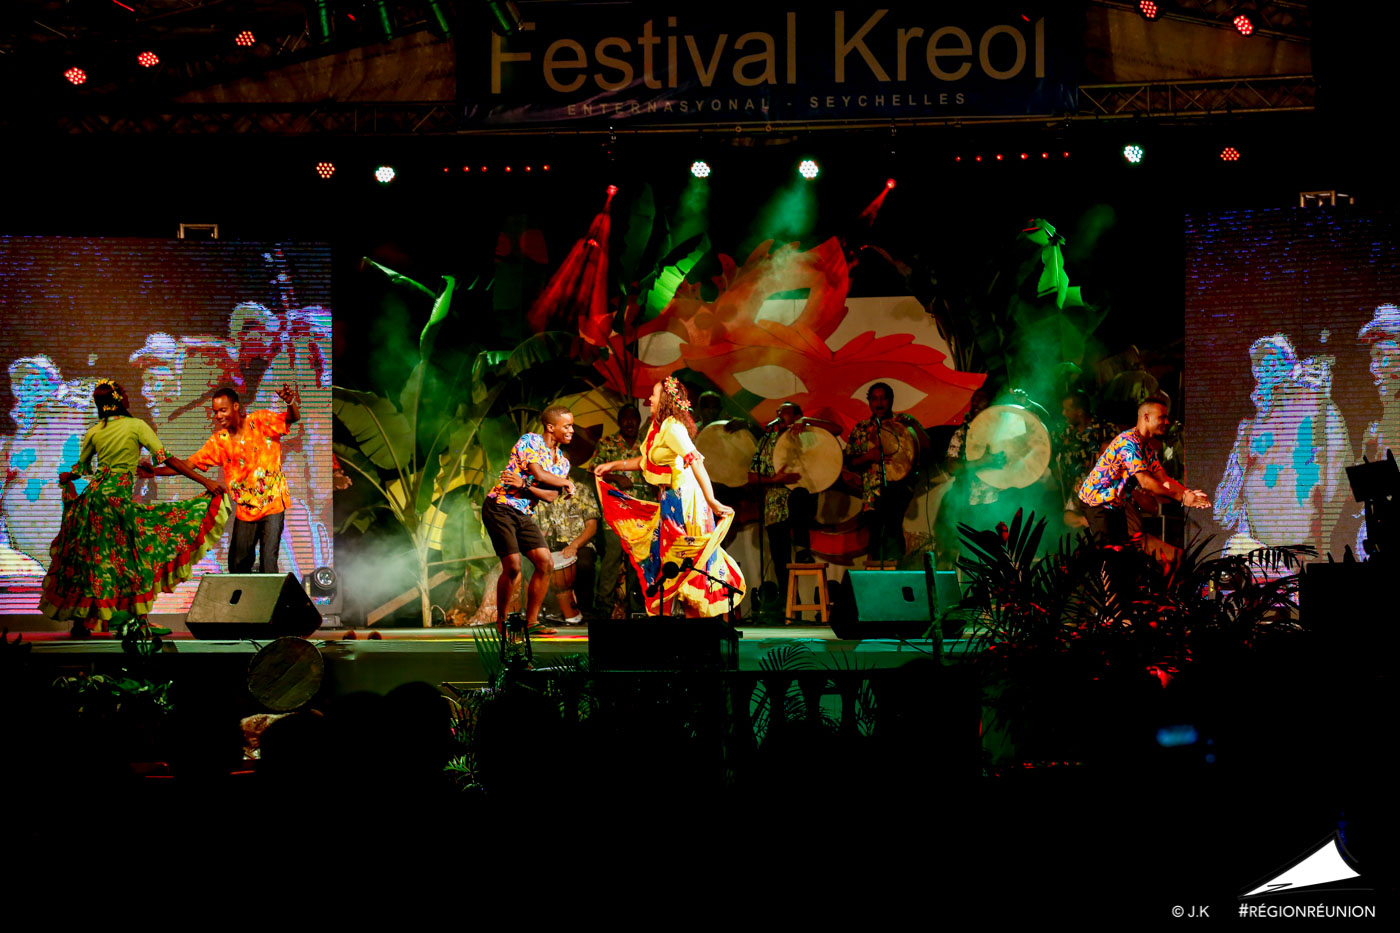 Le Festival Kréol des Seychelles en images